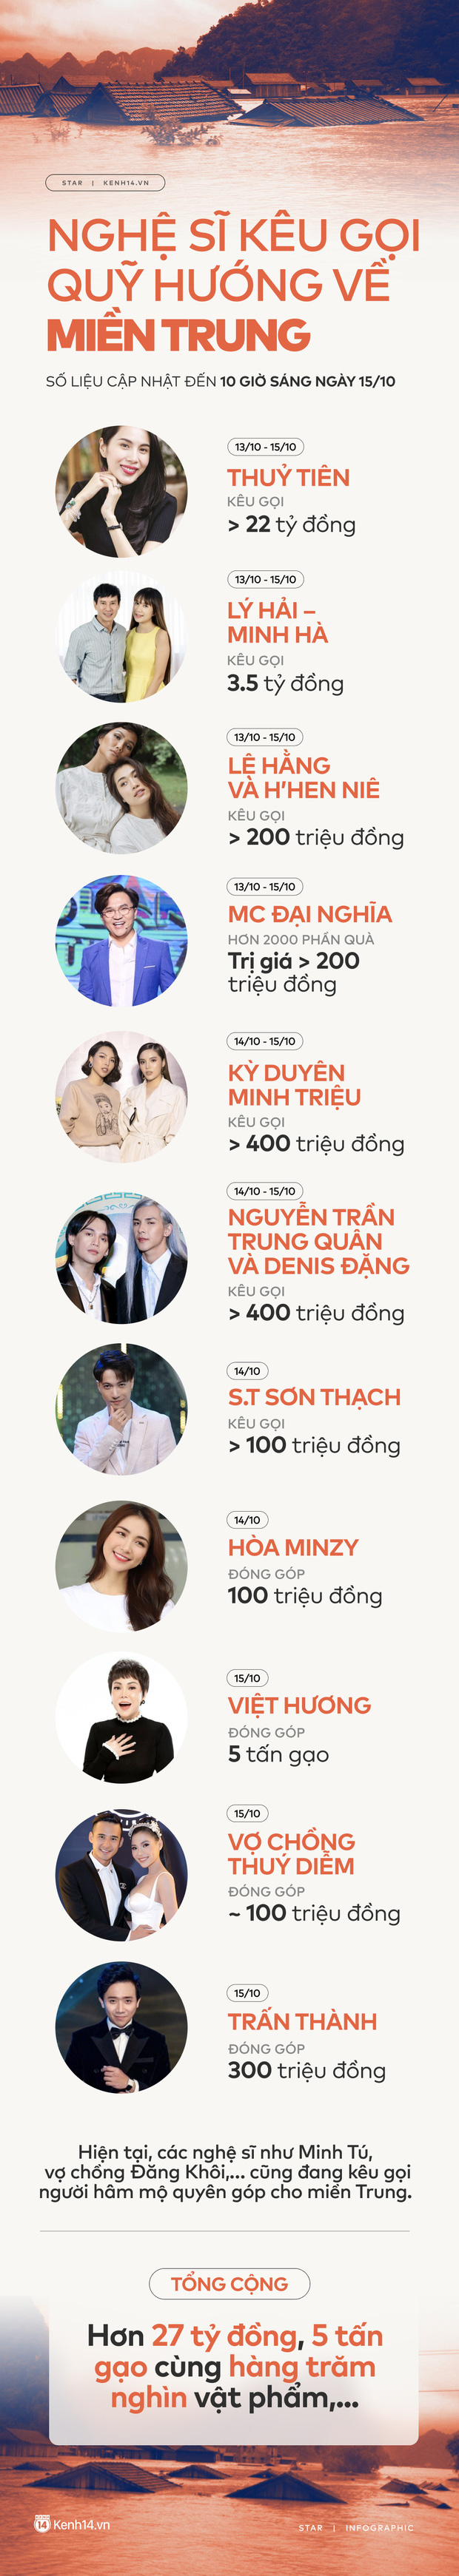 Infographic: Thuỷ Tiên, Trấn Thành và dàn sao Việt cứu trợ hơn 27 tỷ đồng cho miền Trung với tấm lòng vàng lan toả!